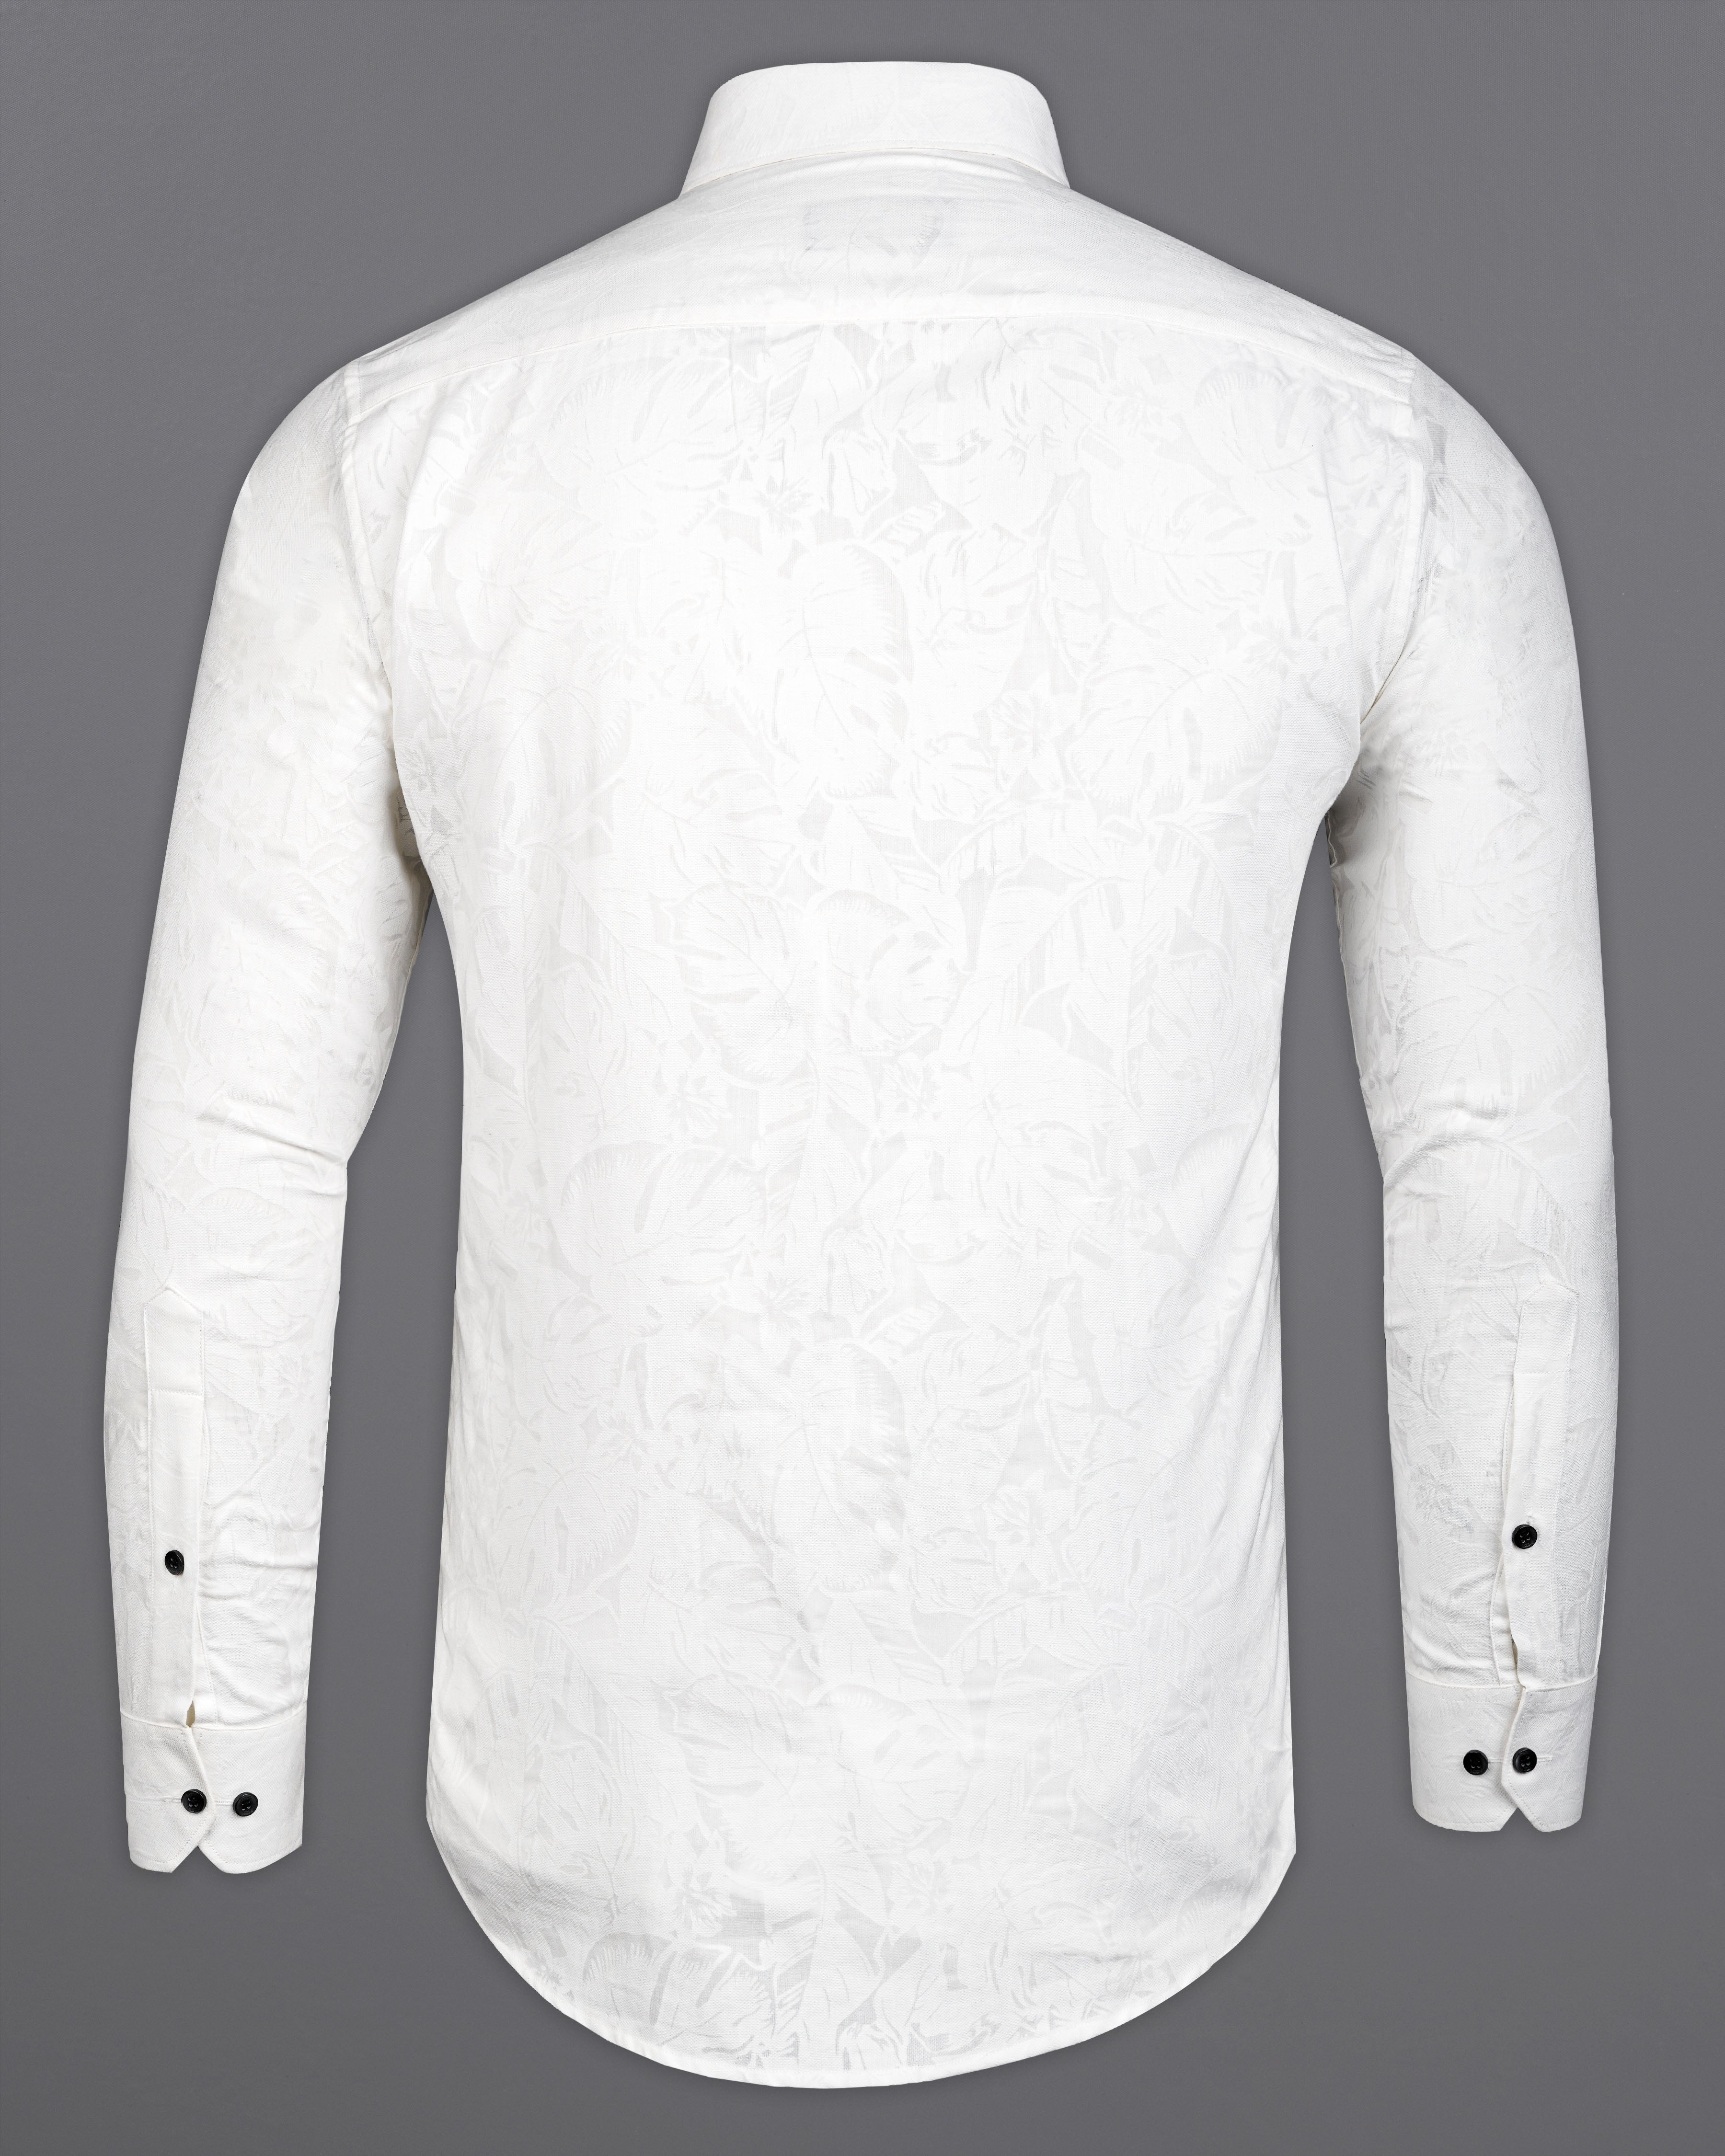 Bright White Jacquard Textured Premium Giza Cotton Shirt 9864-BLK-38, 9864-BLK-H-38, 9864-BLK-39, 9864-BLK-H-39, 9864-BLK-40, 9864-BLK-H-40, 9864-BLK-42, 9864-BLK-H-42, 9864-BLK-44, 9864-BLK-H-44, 9864-BLK-46, 9864-BLK-H-46, 9864-BLK-48, 9864-BLK-H-48, 9864-BLK-50, 9864-BLK-H-50, 9864-BLK-52, 9864-BLK-H-52